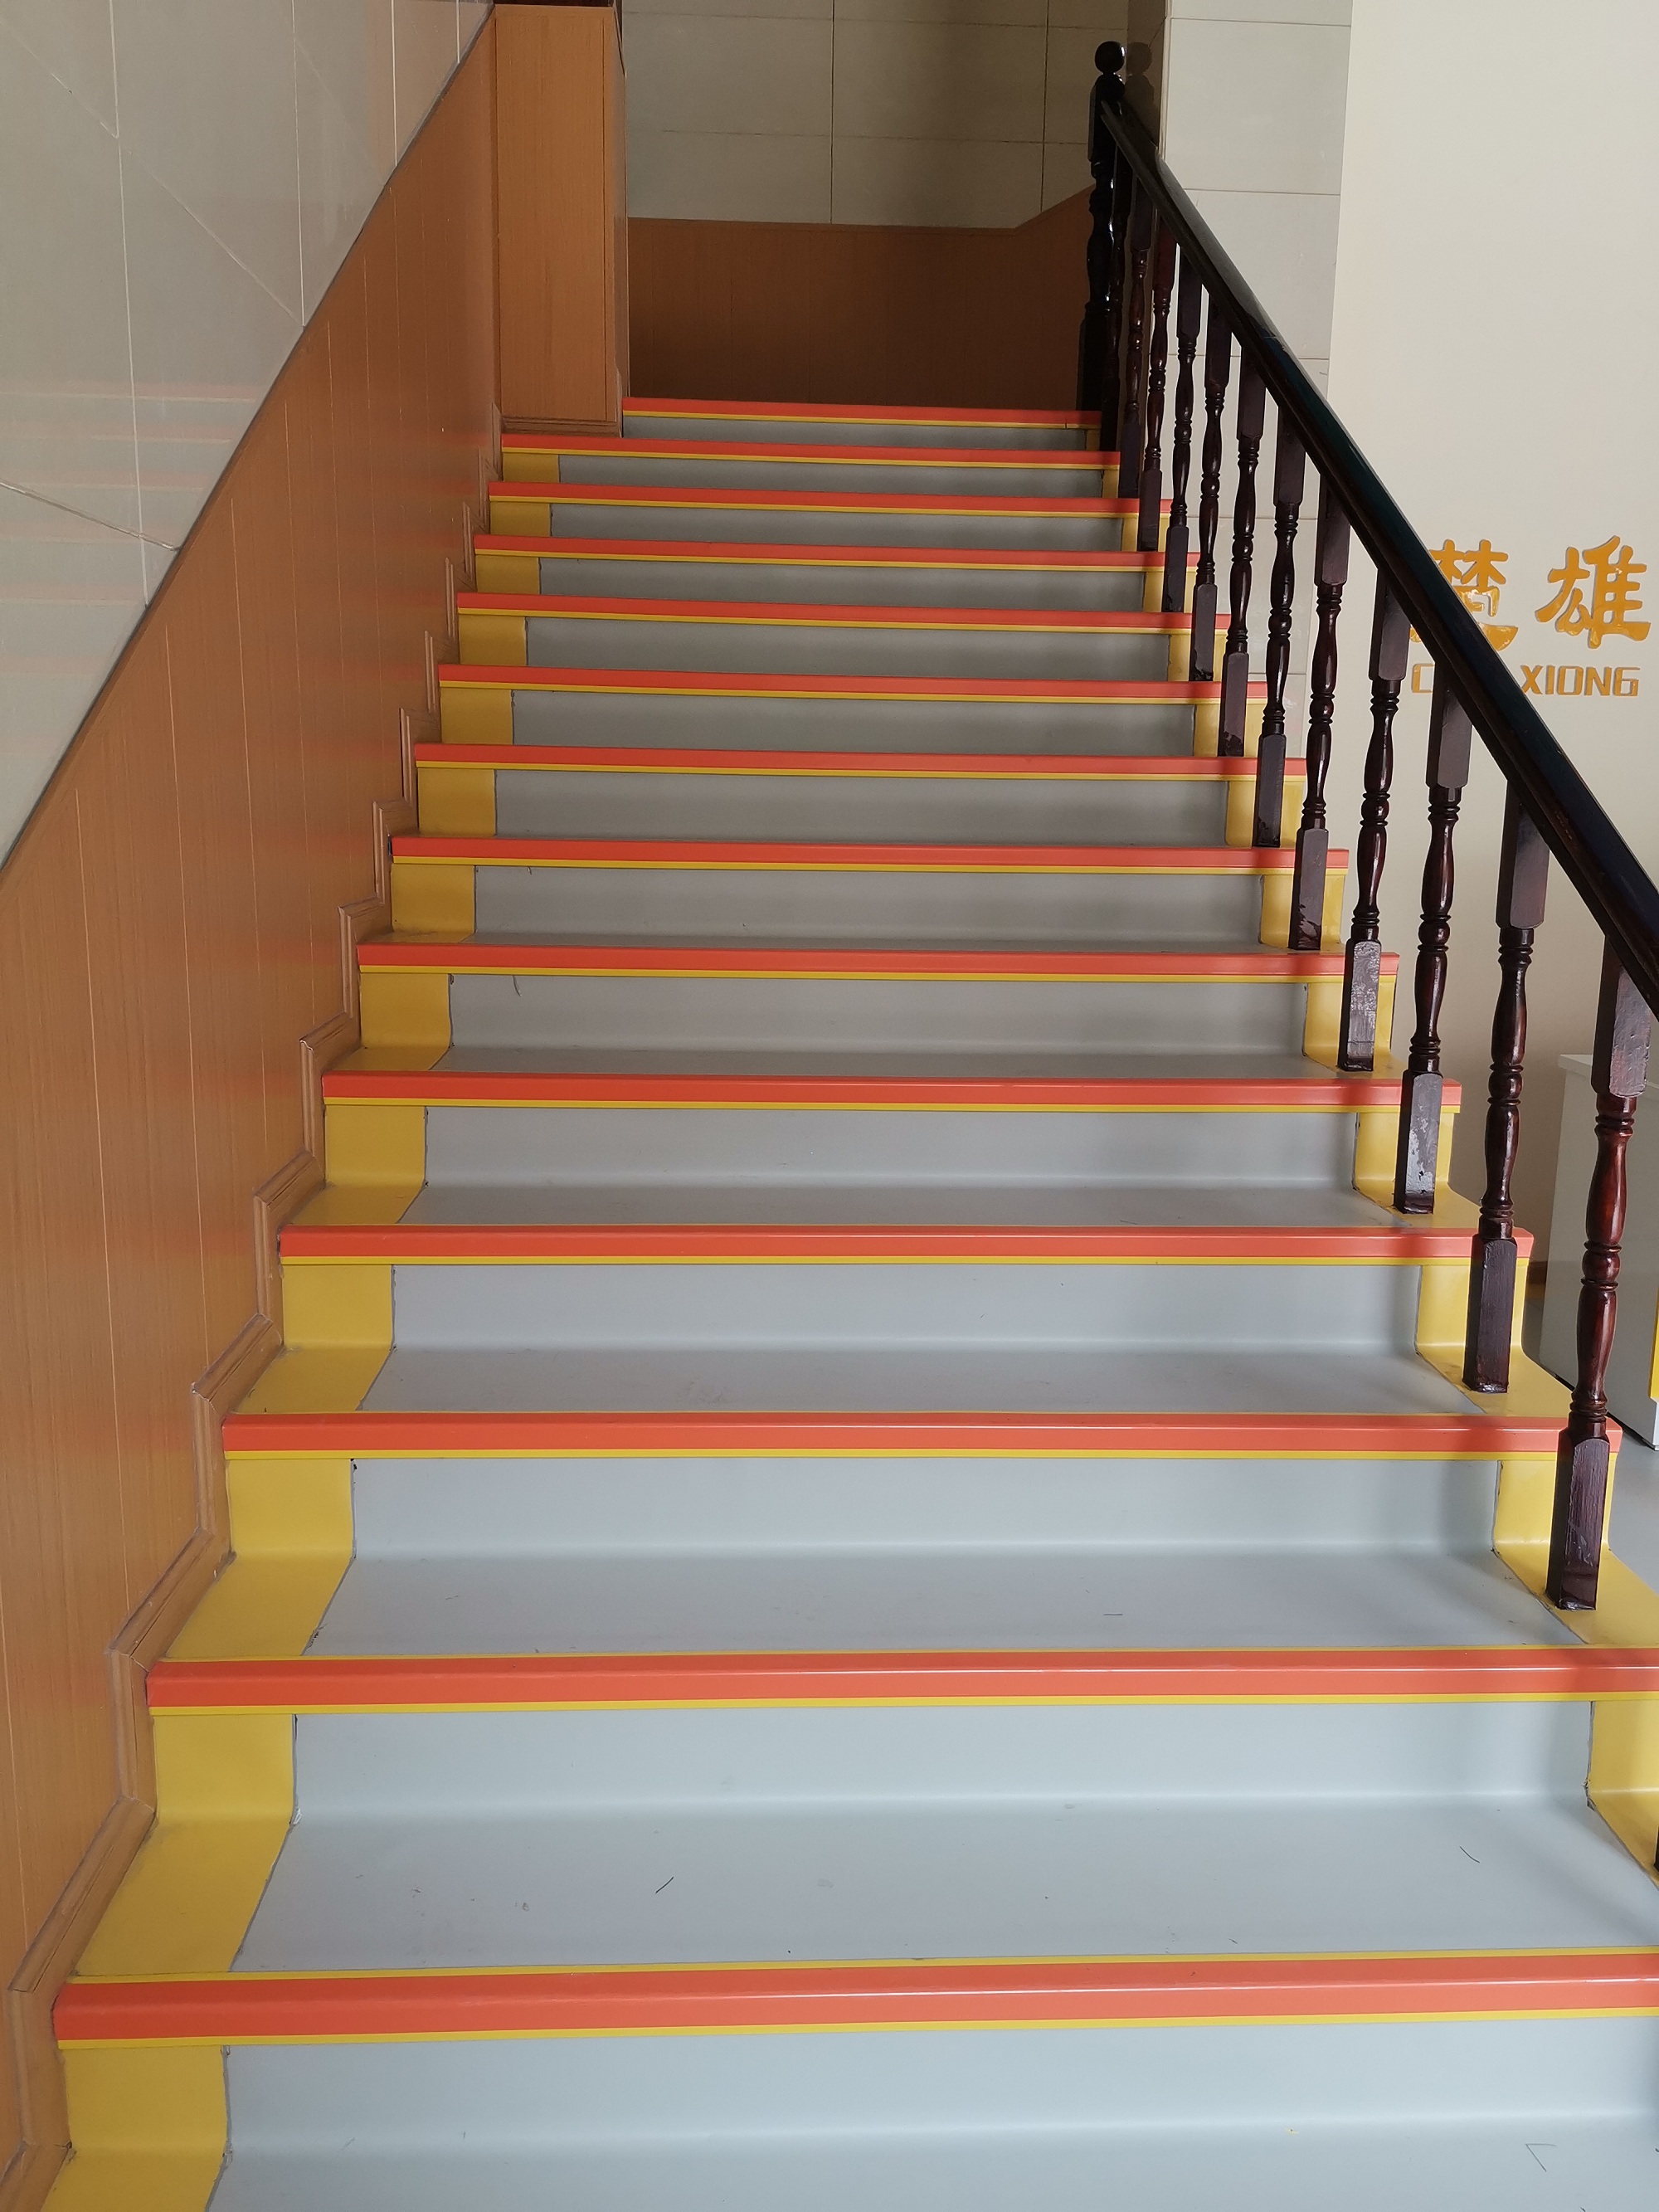 云南PVC塑胶地板